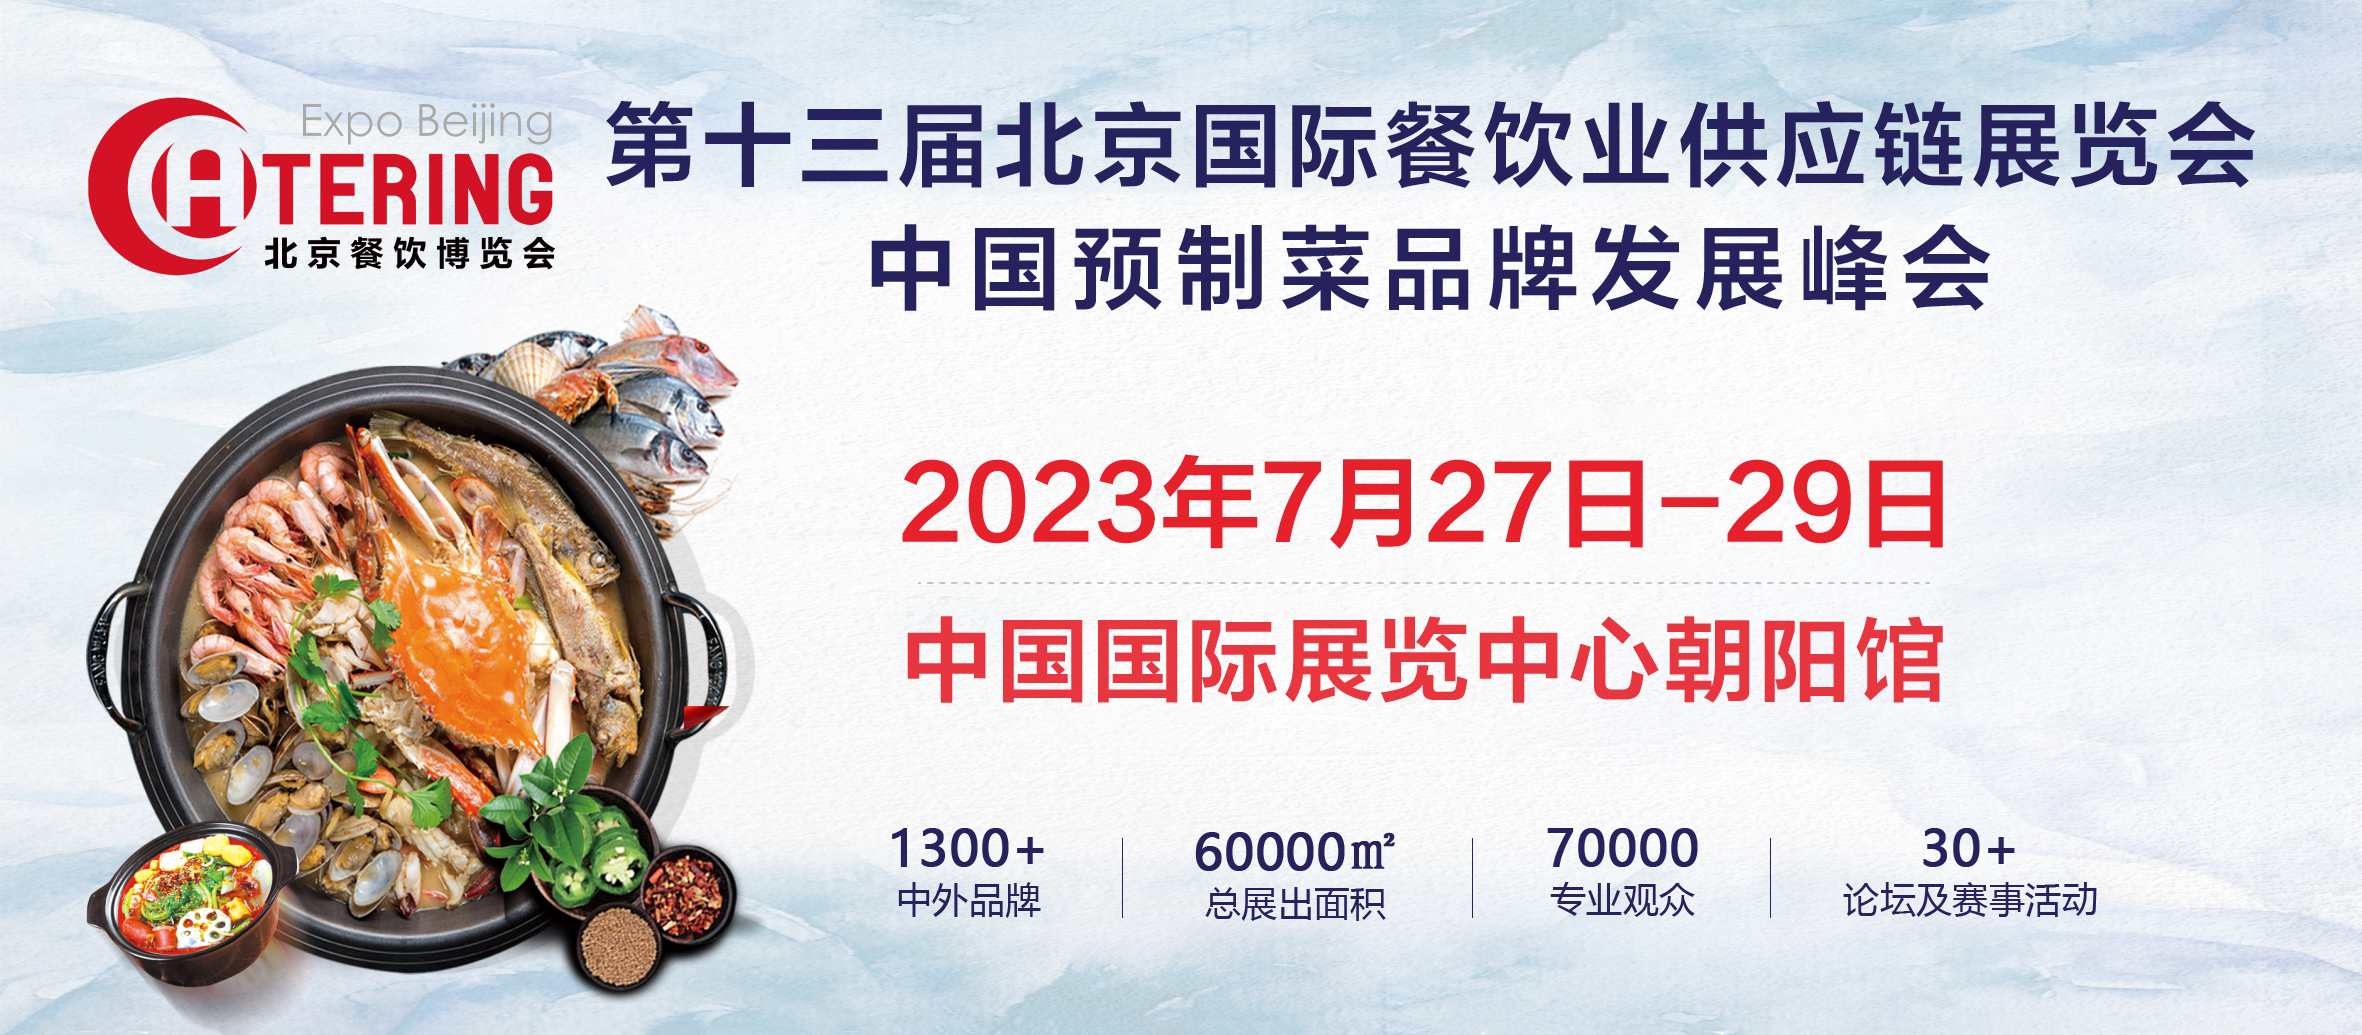 展商推介丨四川伊品调味⻝品有限公司将携最新产品亮相2023北京餐博会(图1)